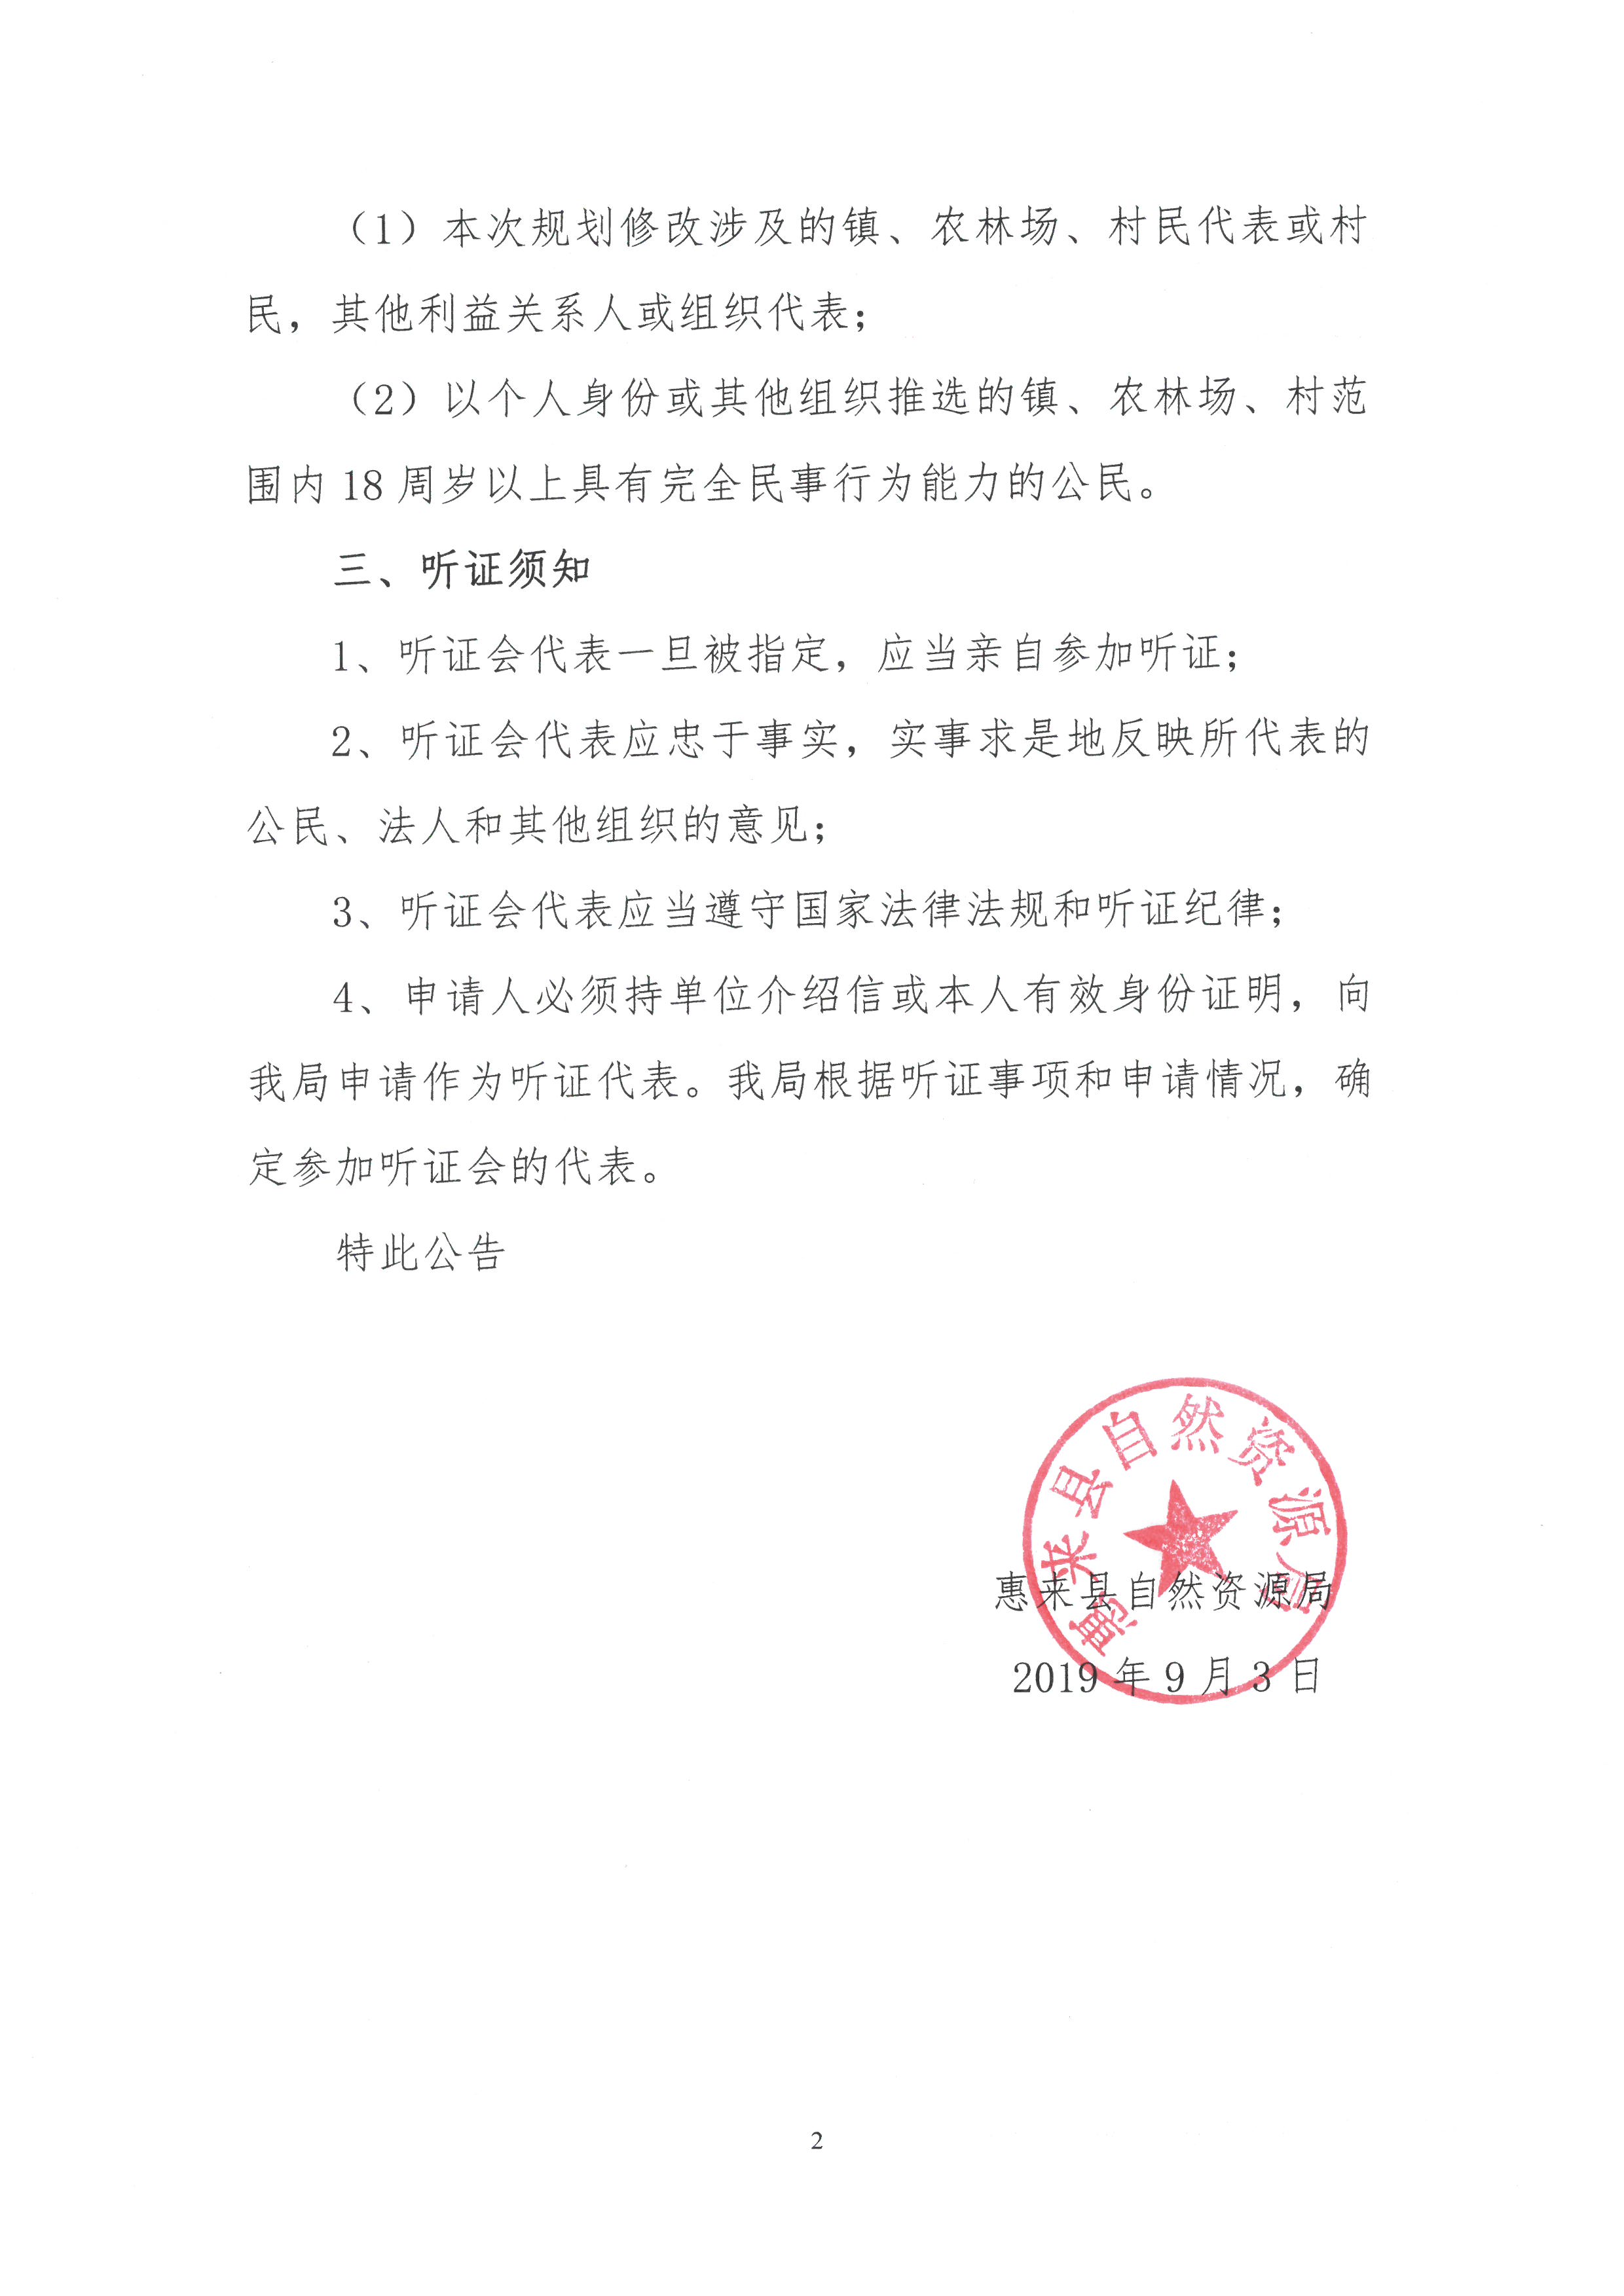 关于《惠来县土地利用总体规划(2010 -2020年)修改方案(揭阳理工学院)》听证会公告2.jpg